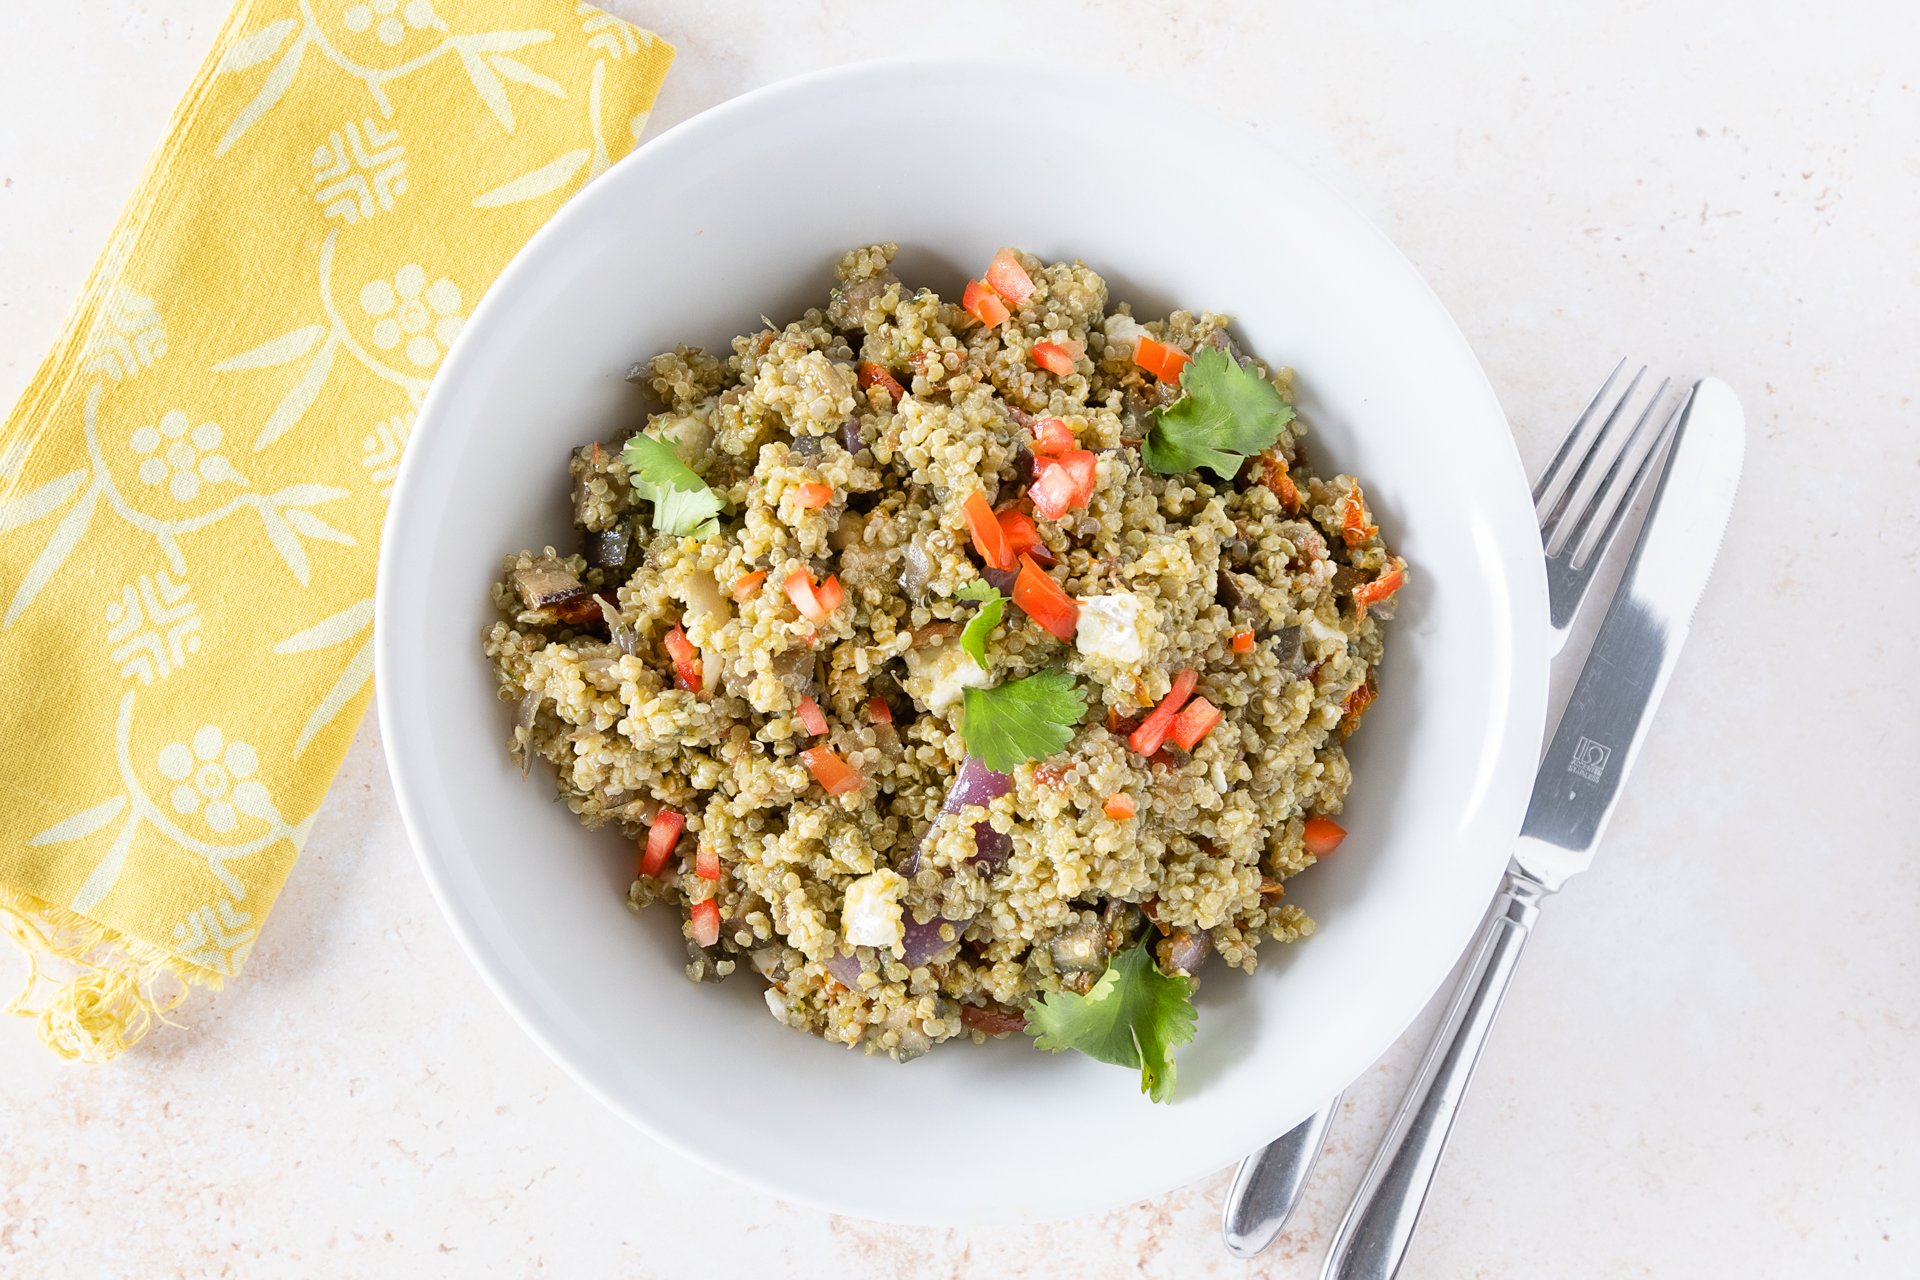 MA153B2 - Salade de quinoa, feta & aubergines grillées au pesto